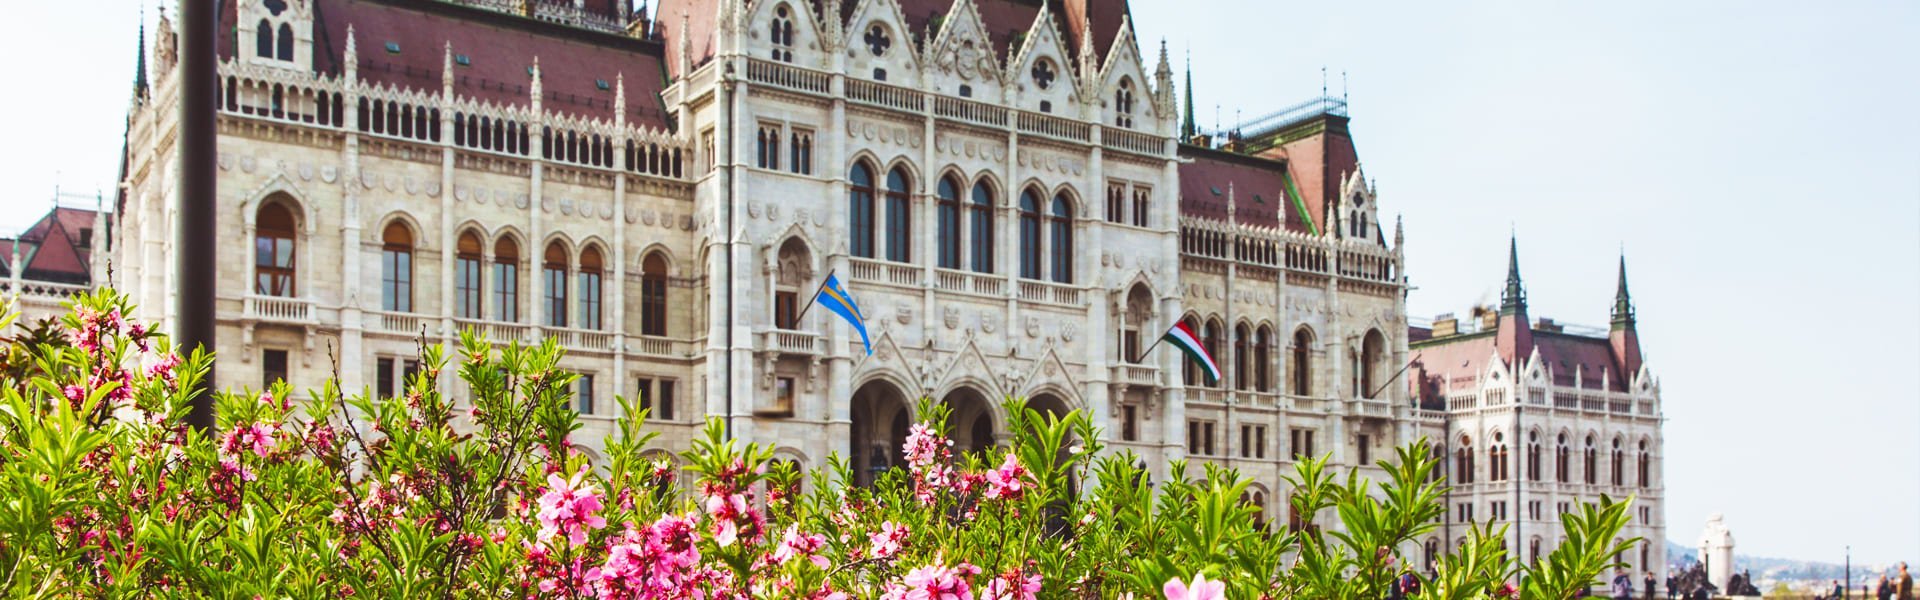 Het parlementsgebouw in Boedapest, Hongarije